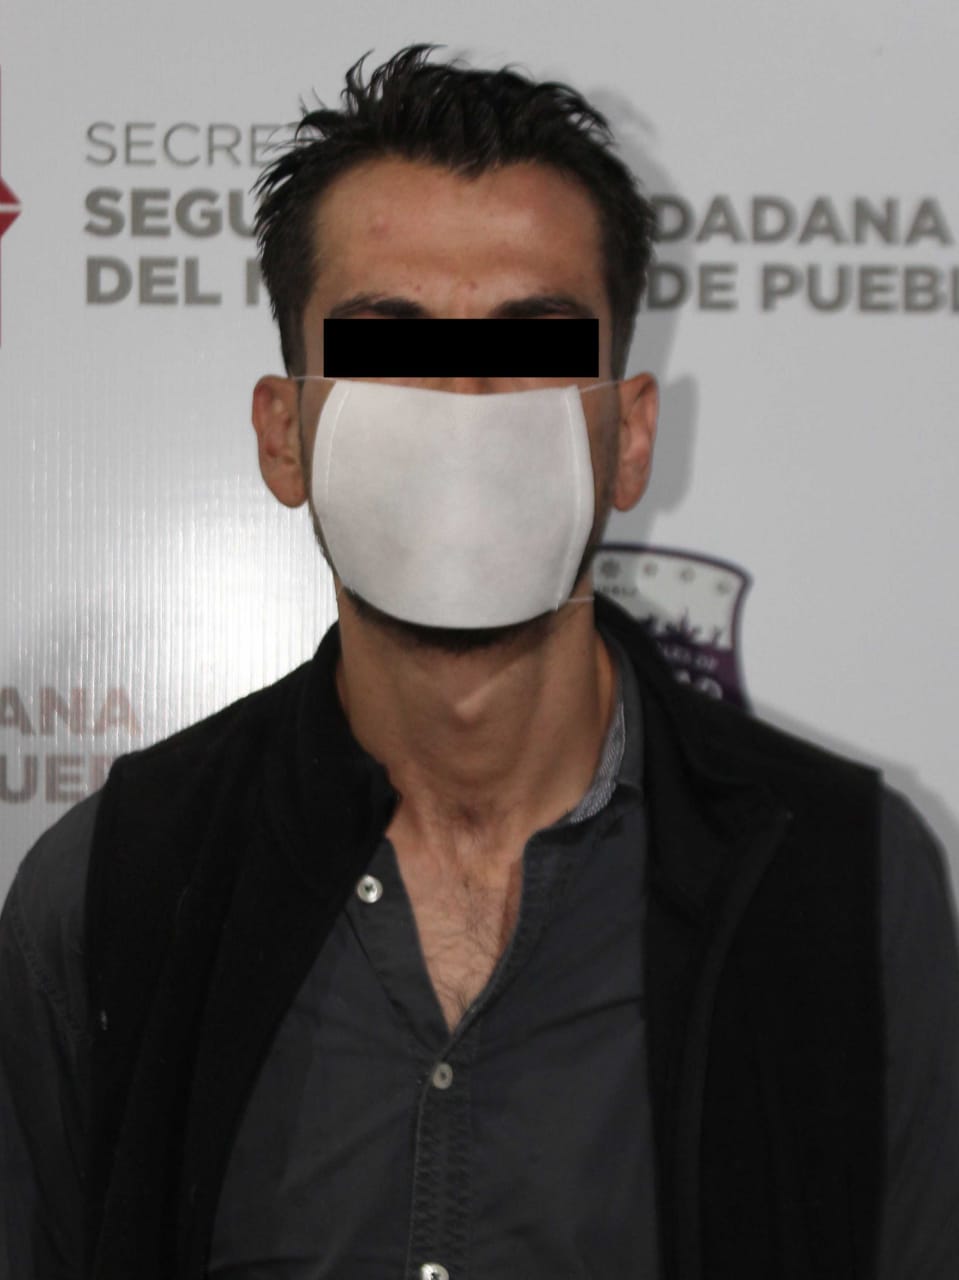 Policía municipal de Puebla atrapa a portador ilegal de arma